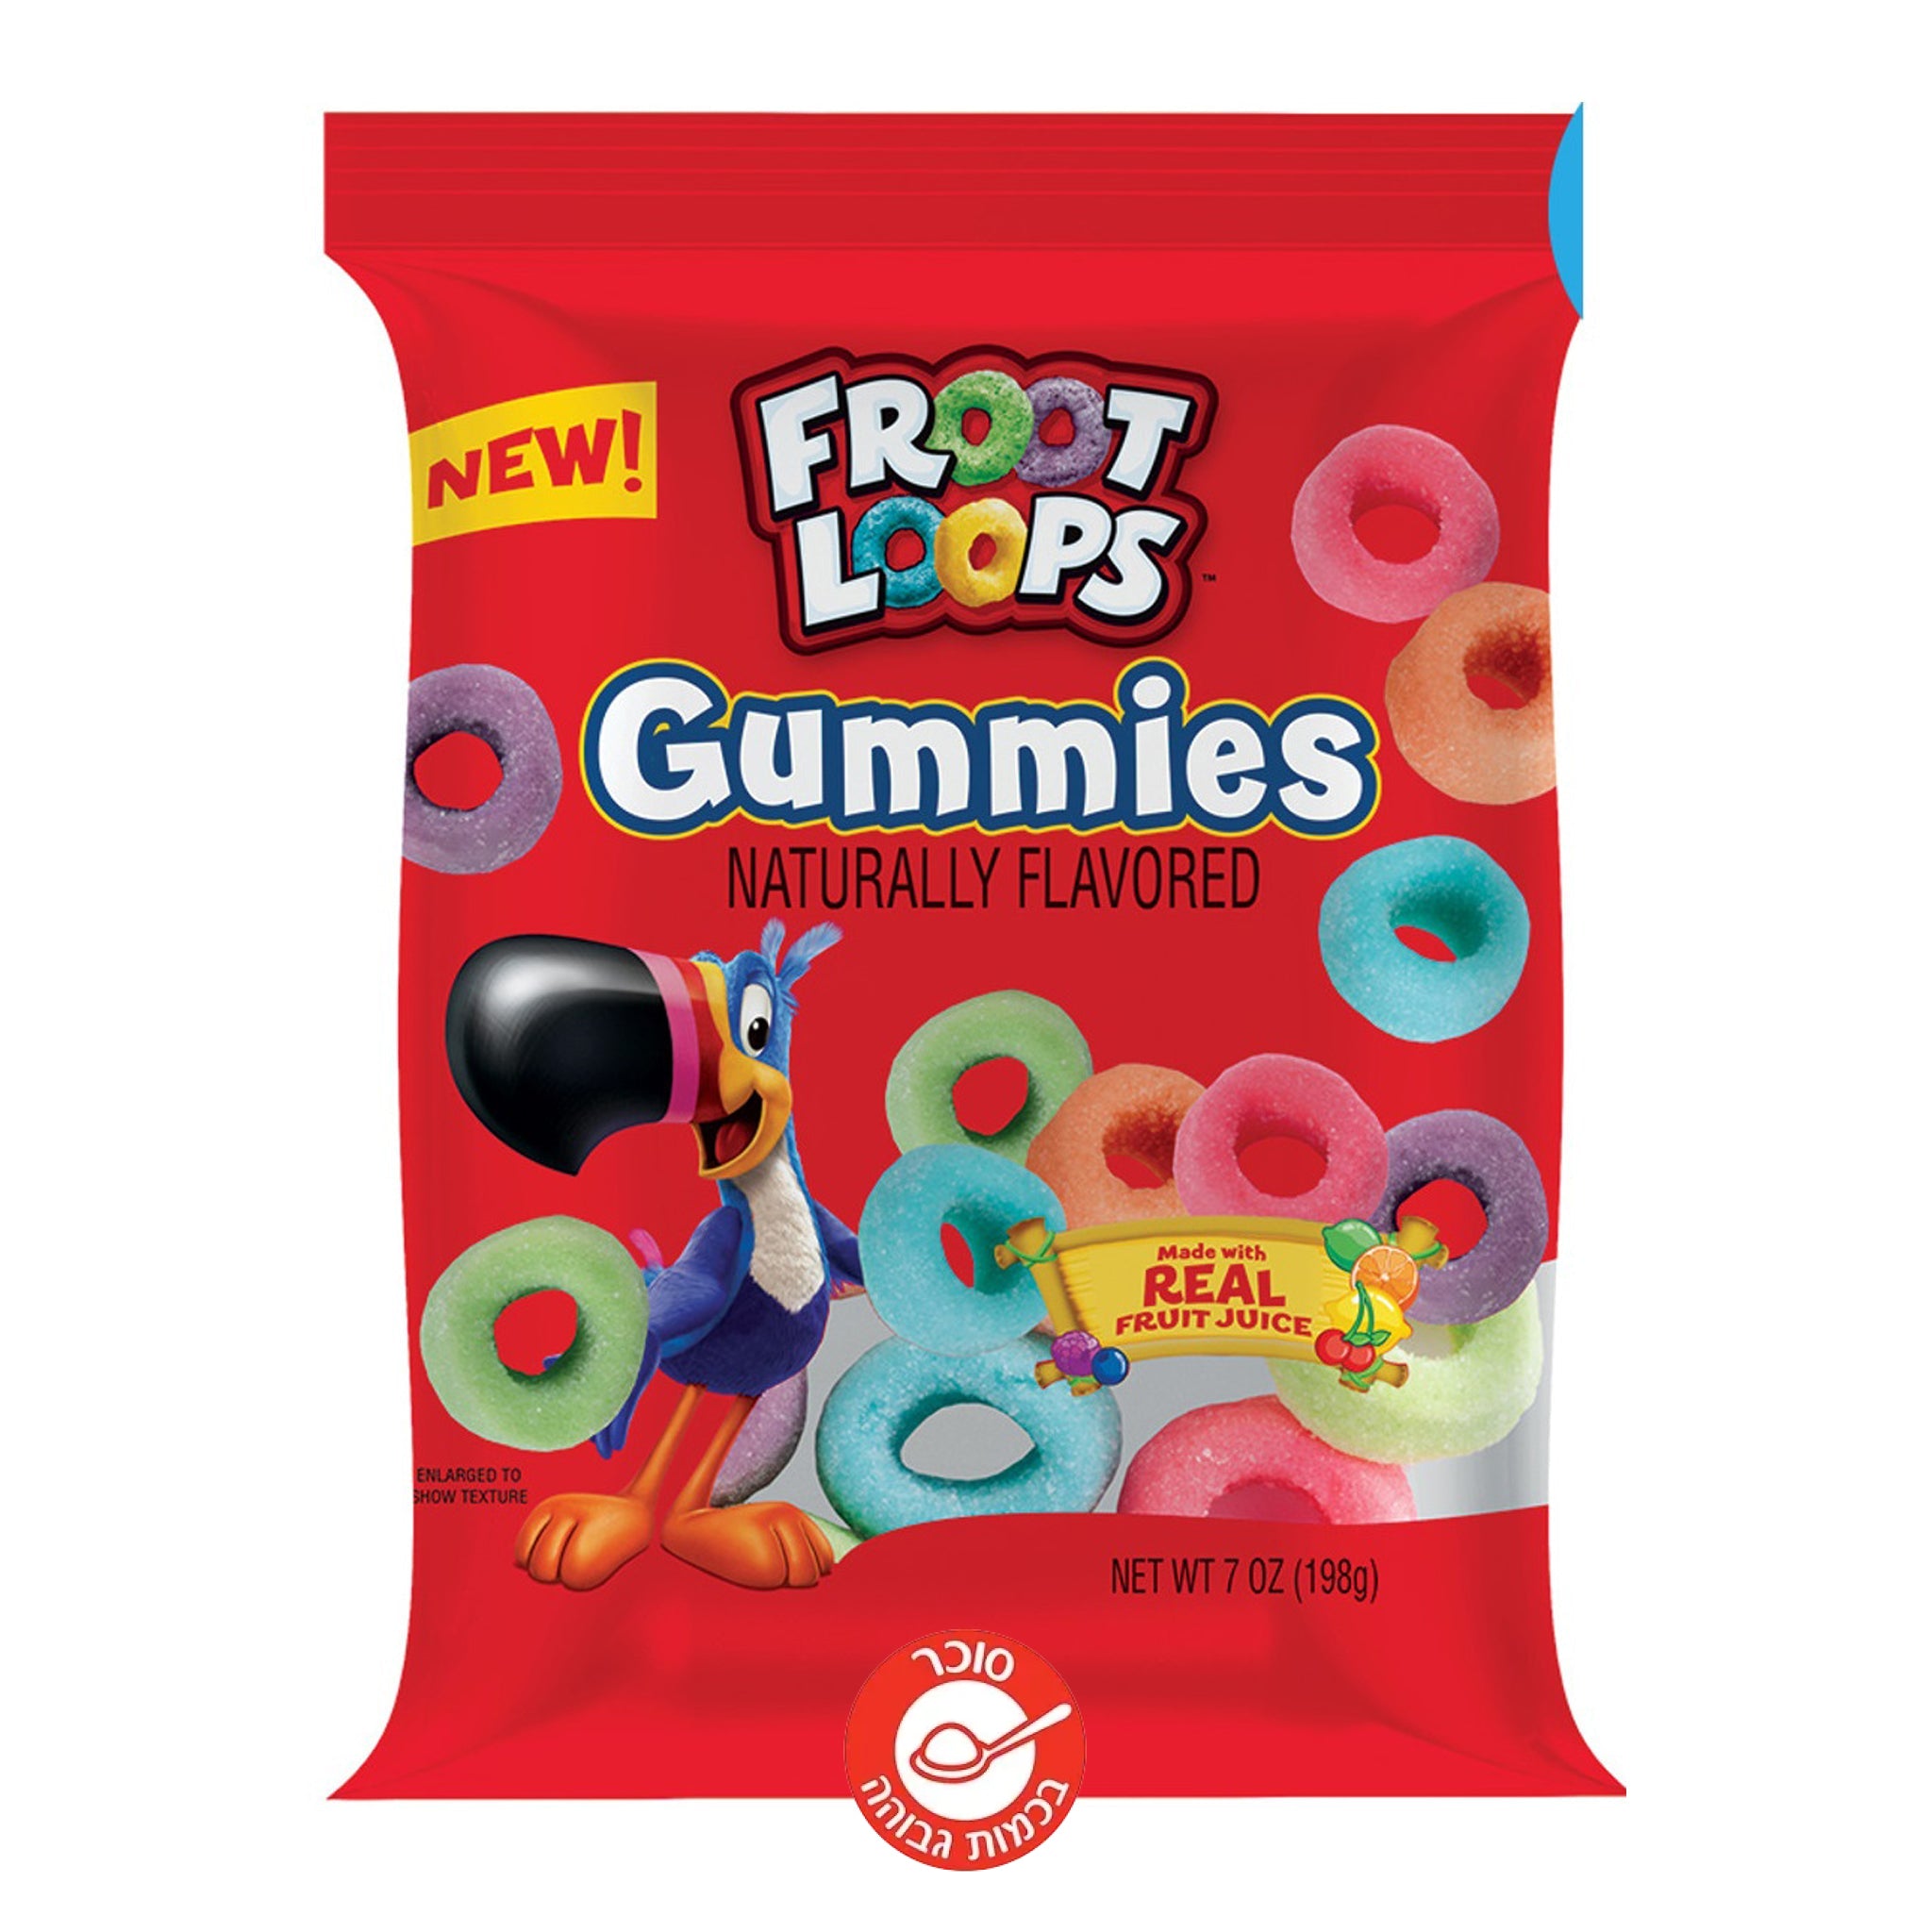 Fruit Loops Gummies סוכריות גומי פרוט לופס חדש!!